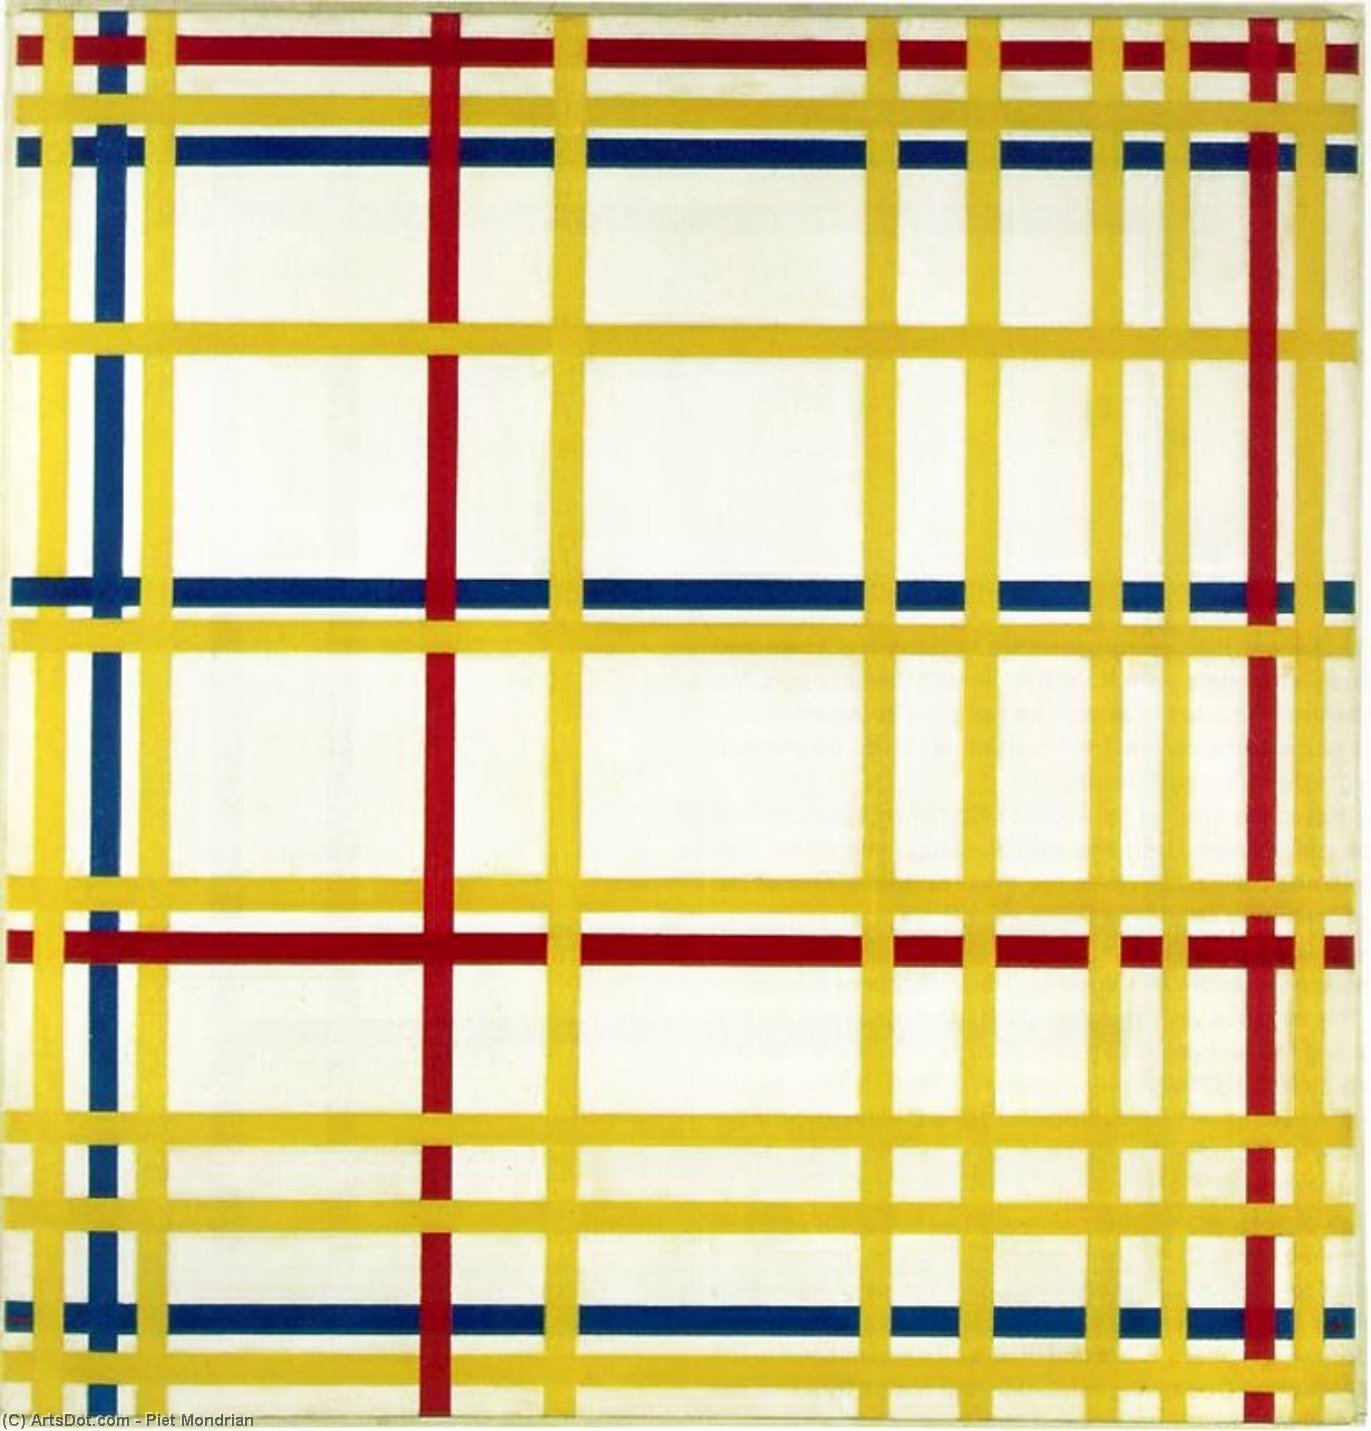 Wikoo.org - موسوعة الفنون الجميلة - اللوحة، العمل الفني Piet Mondrian - New York City I